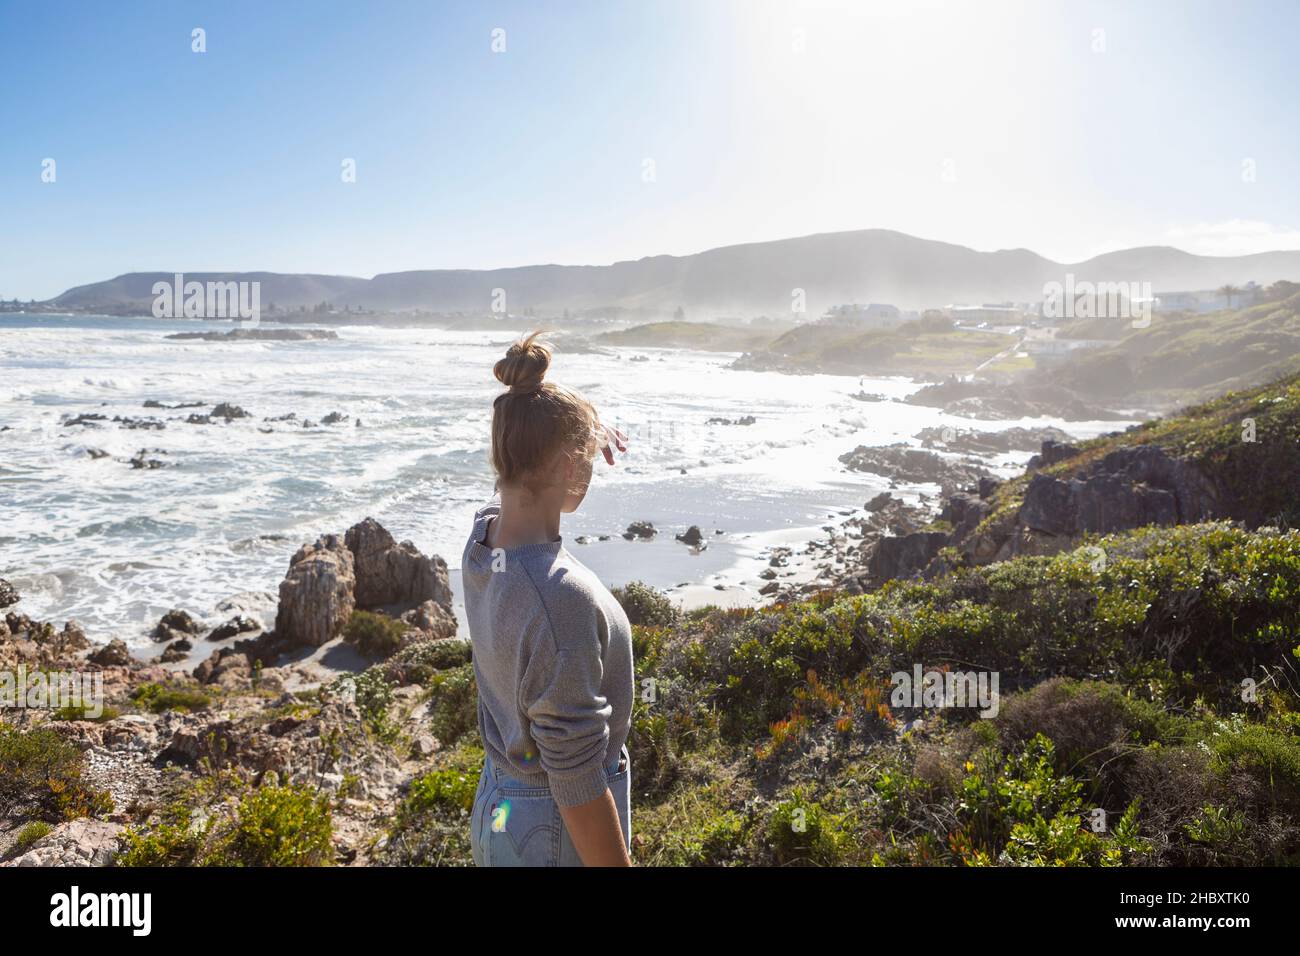 Une adolescente sur des rochers, regardant la côte, les vagues se brisent et la brume monte. Banque D'Images